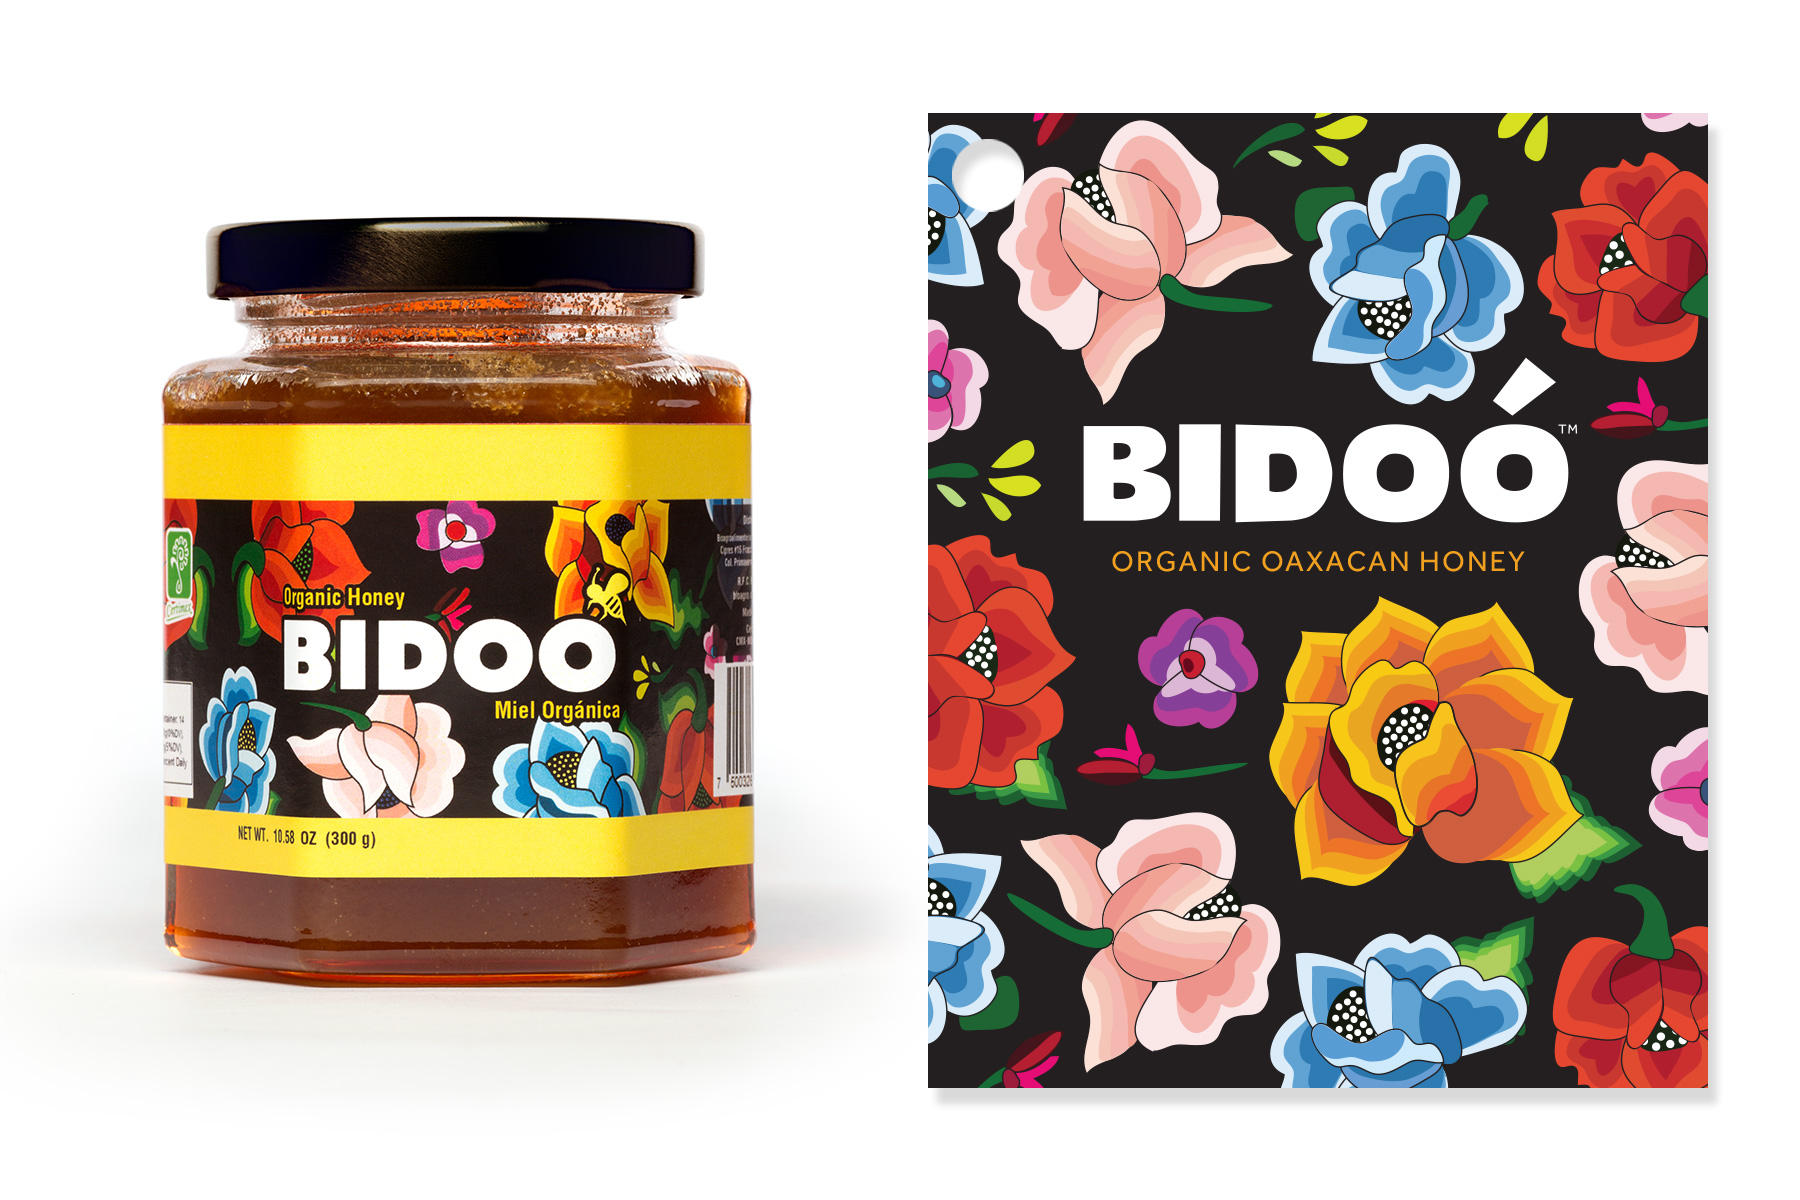 Bidoo Honey Packaging